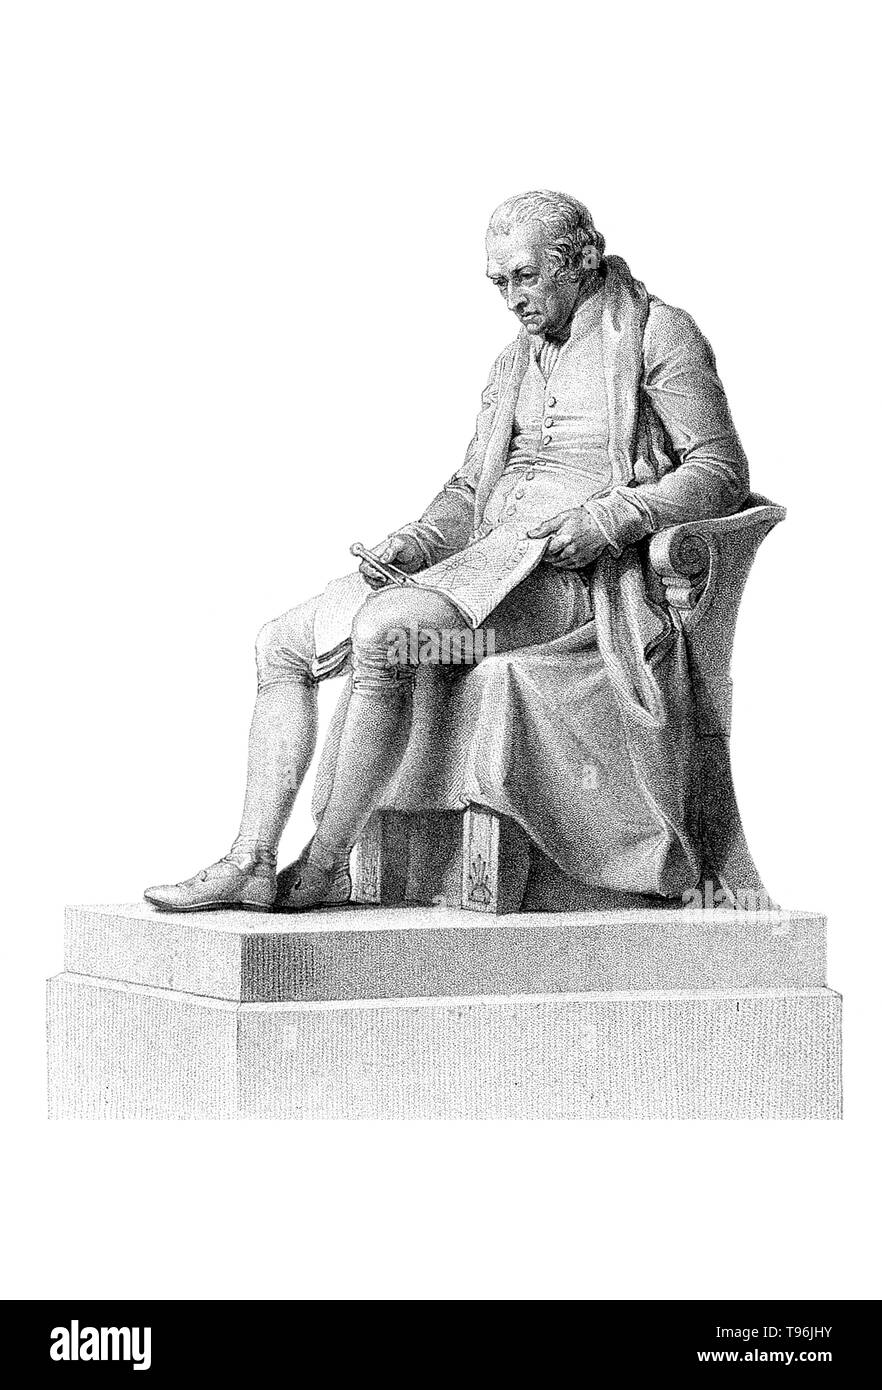 James Watt (Januar 30, 1736 - 25. August 1819) war ein schottischer Erfinder und Ingenieur Mechanisches, deren Verbesserungen der Newcomen Dampfmaschine Grundlegendes zu den Änderungen, die durch die industrielle Revolution gebracht wurden. Watt wurde eine Weiterentwicklung, die separaten Kondensator, der diese Verschwendung von Energie vermieden und grundlegend verbessert die Leistung, Effizienz und Wirtschaftlichkeit von Dampfmaschinen. Stockfoto